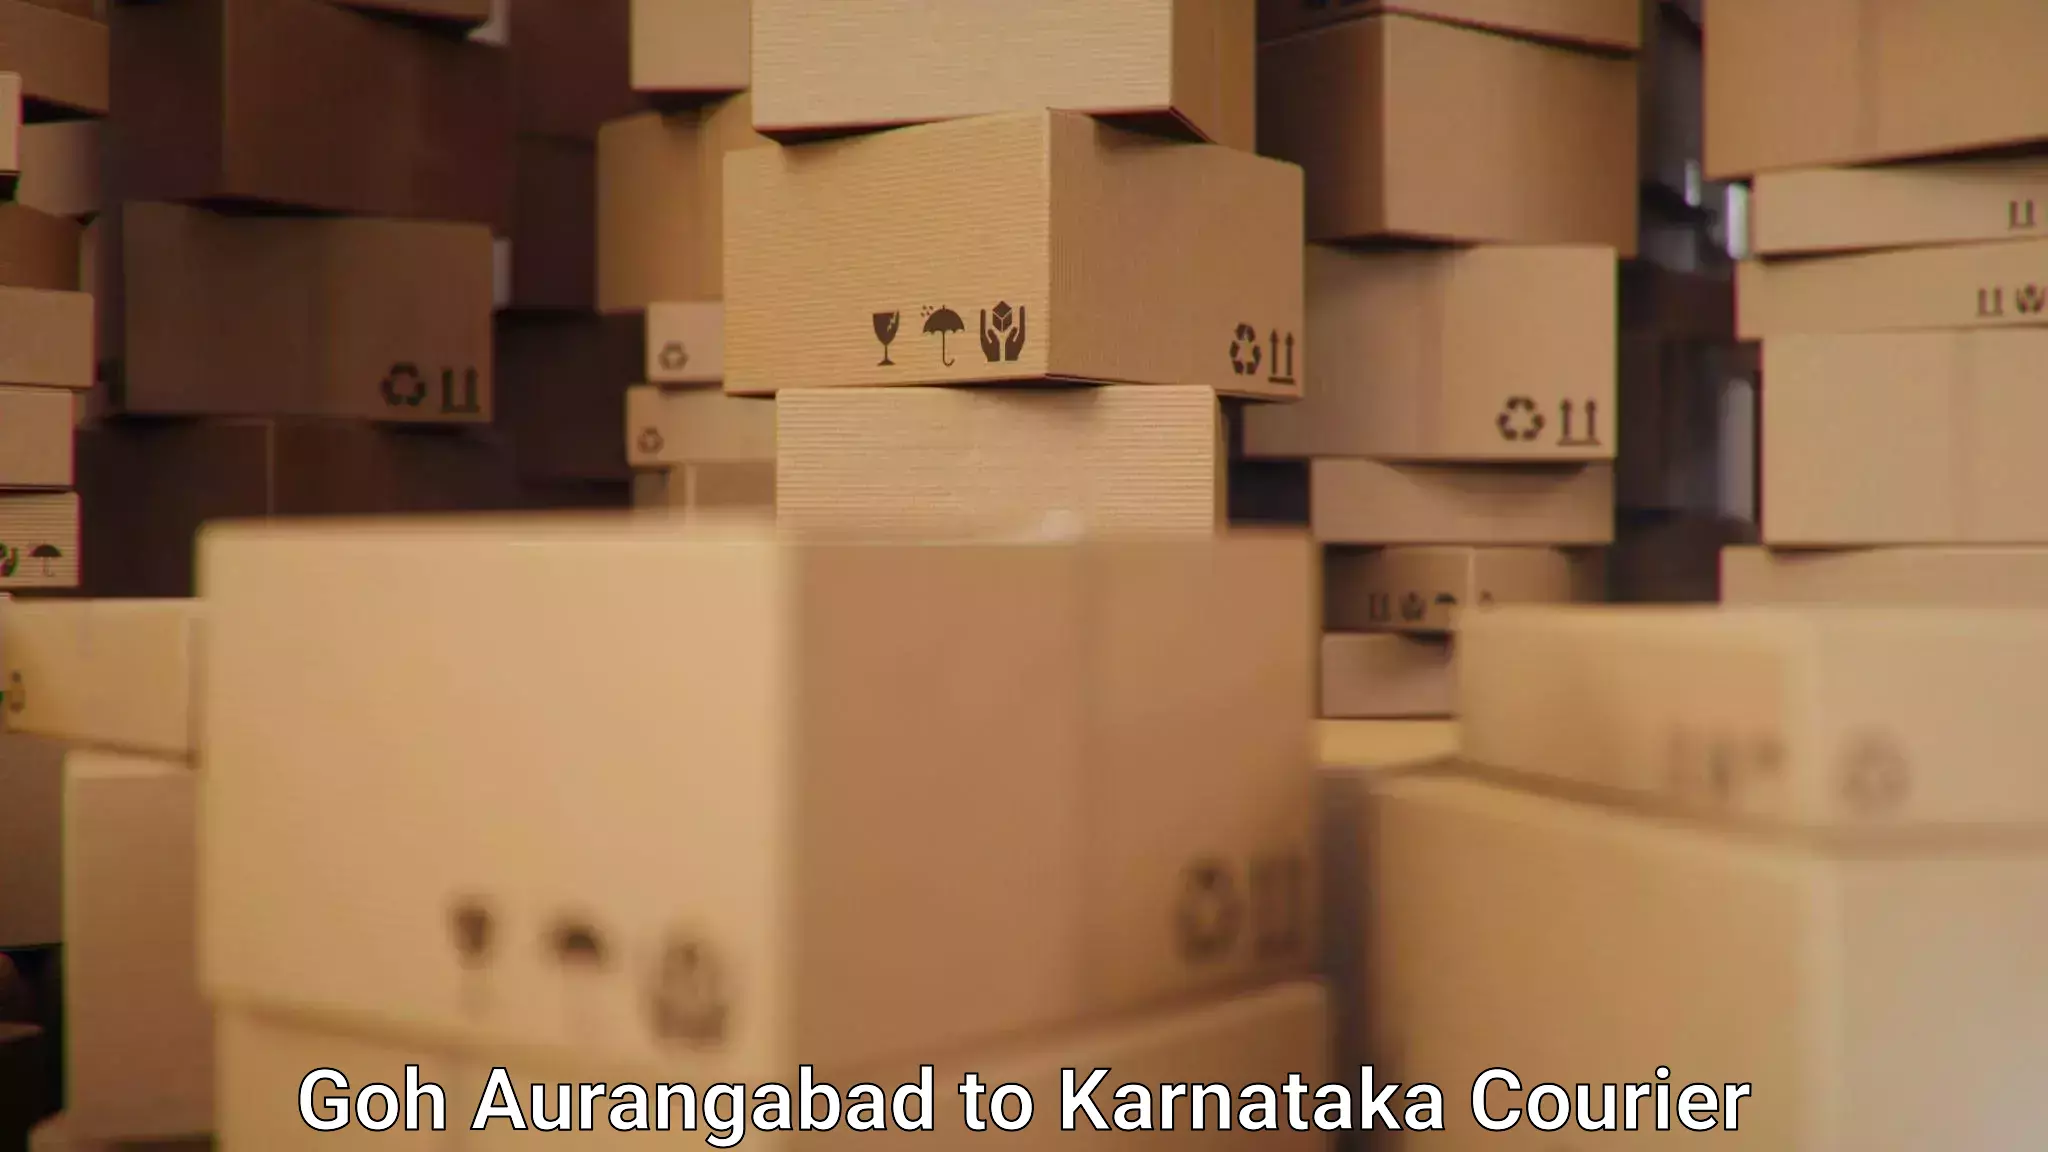 Efficient shipping operations Goh Aurangabad to Karnataka